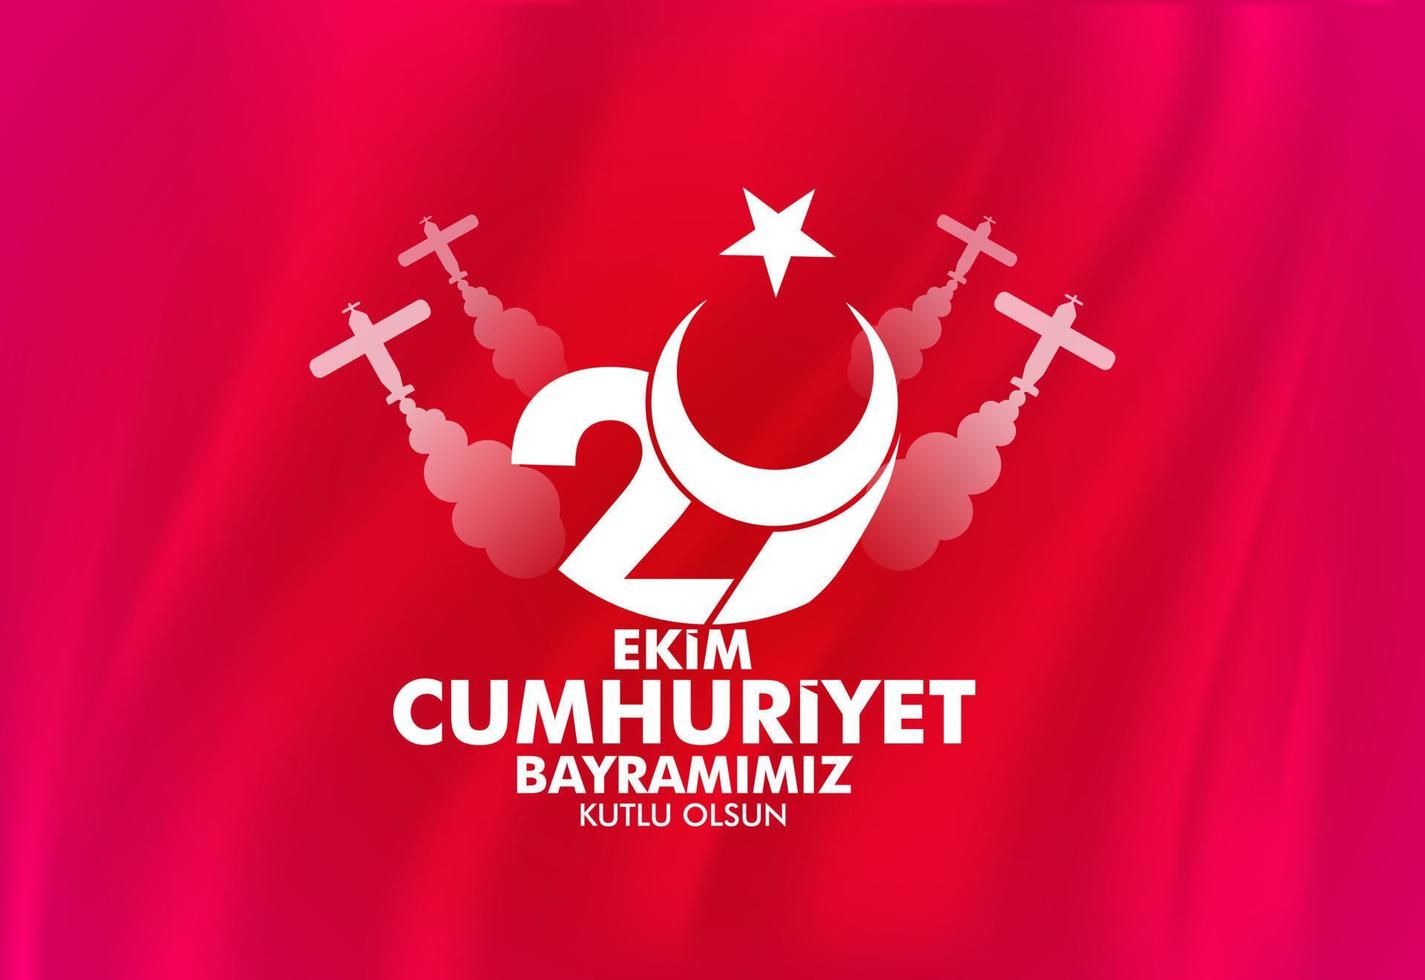 29 de outubro com a bandeira turca acenando em vermelho. mensagem de felicitações com lua, estrela e avião velho. tradução, feliz 29 de outubro dia da república. vetor